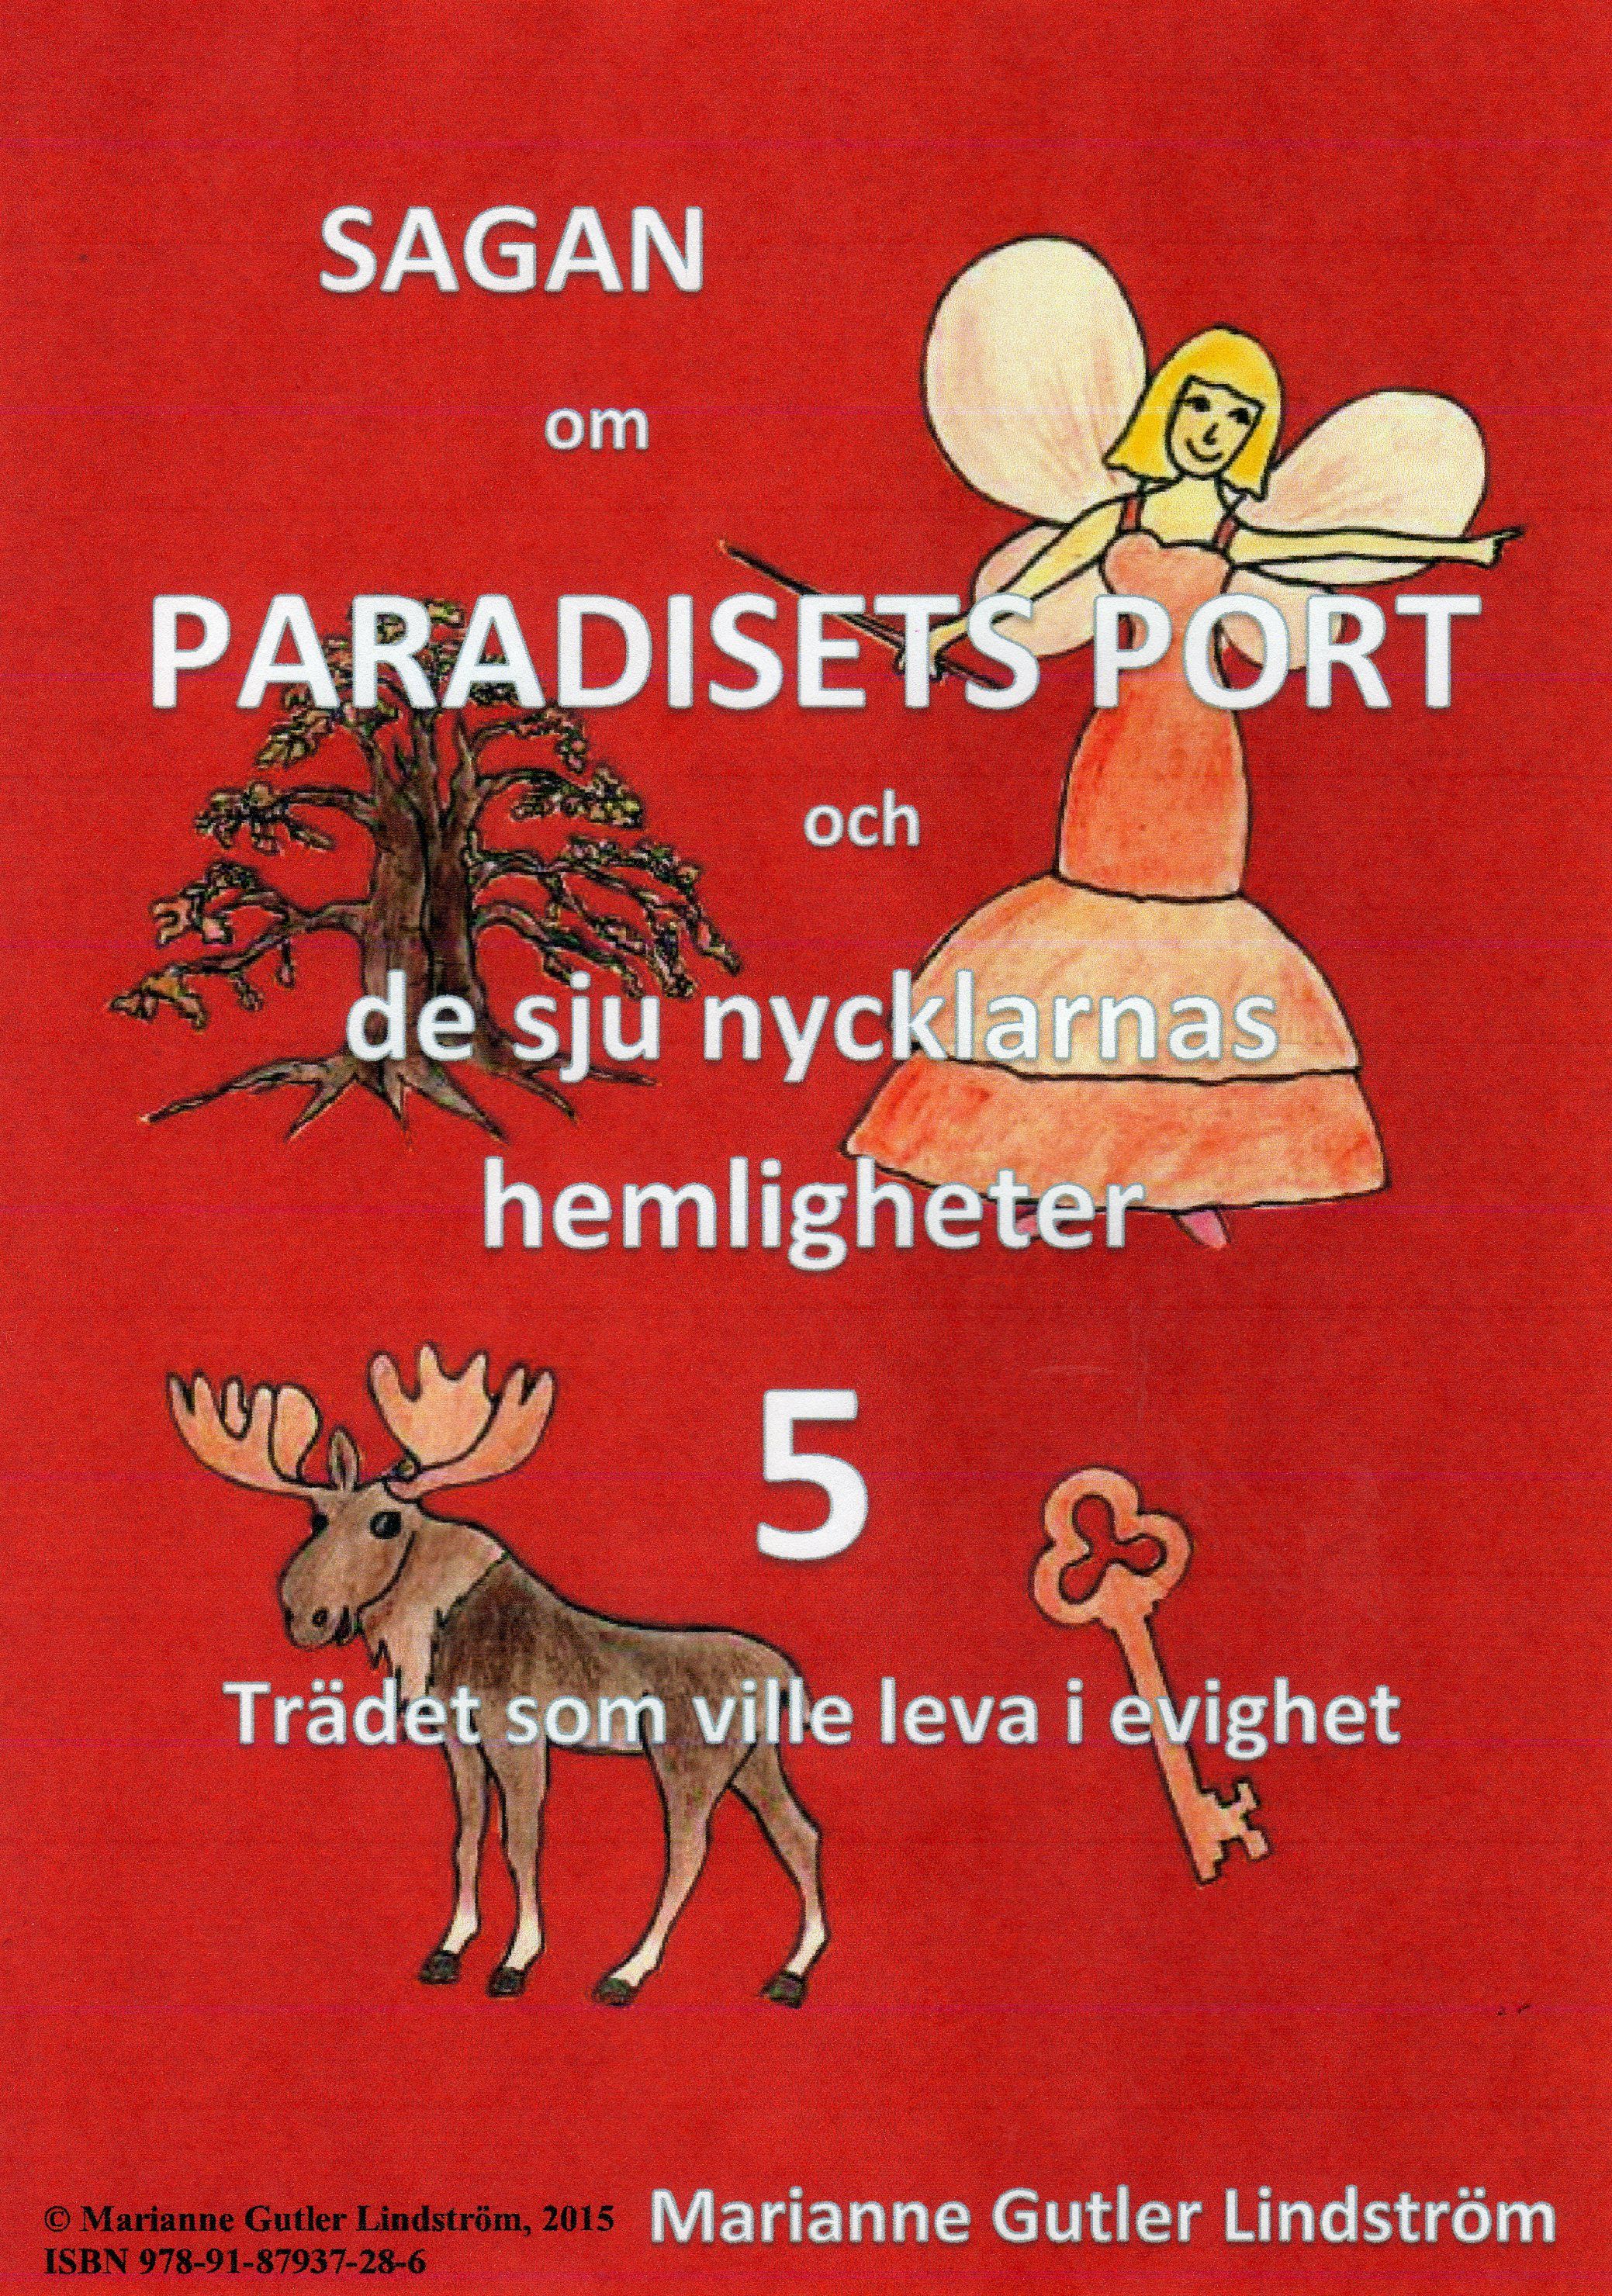 Sagan om Paradisets Port 5 Trädet som ville leva i evighet, e-bog af Marianne Gutler Lindström